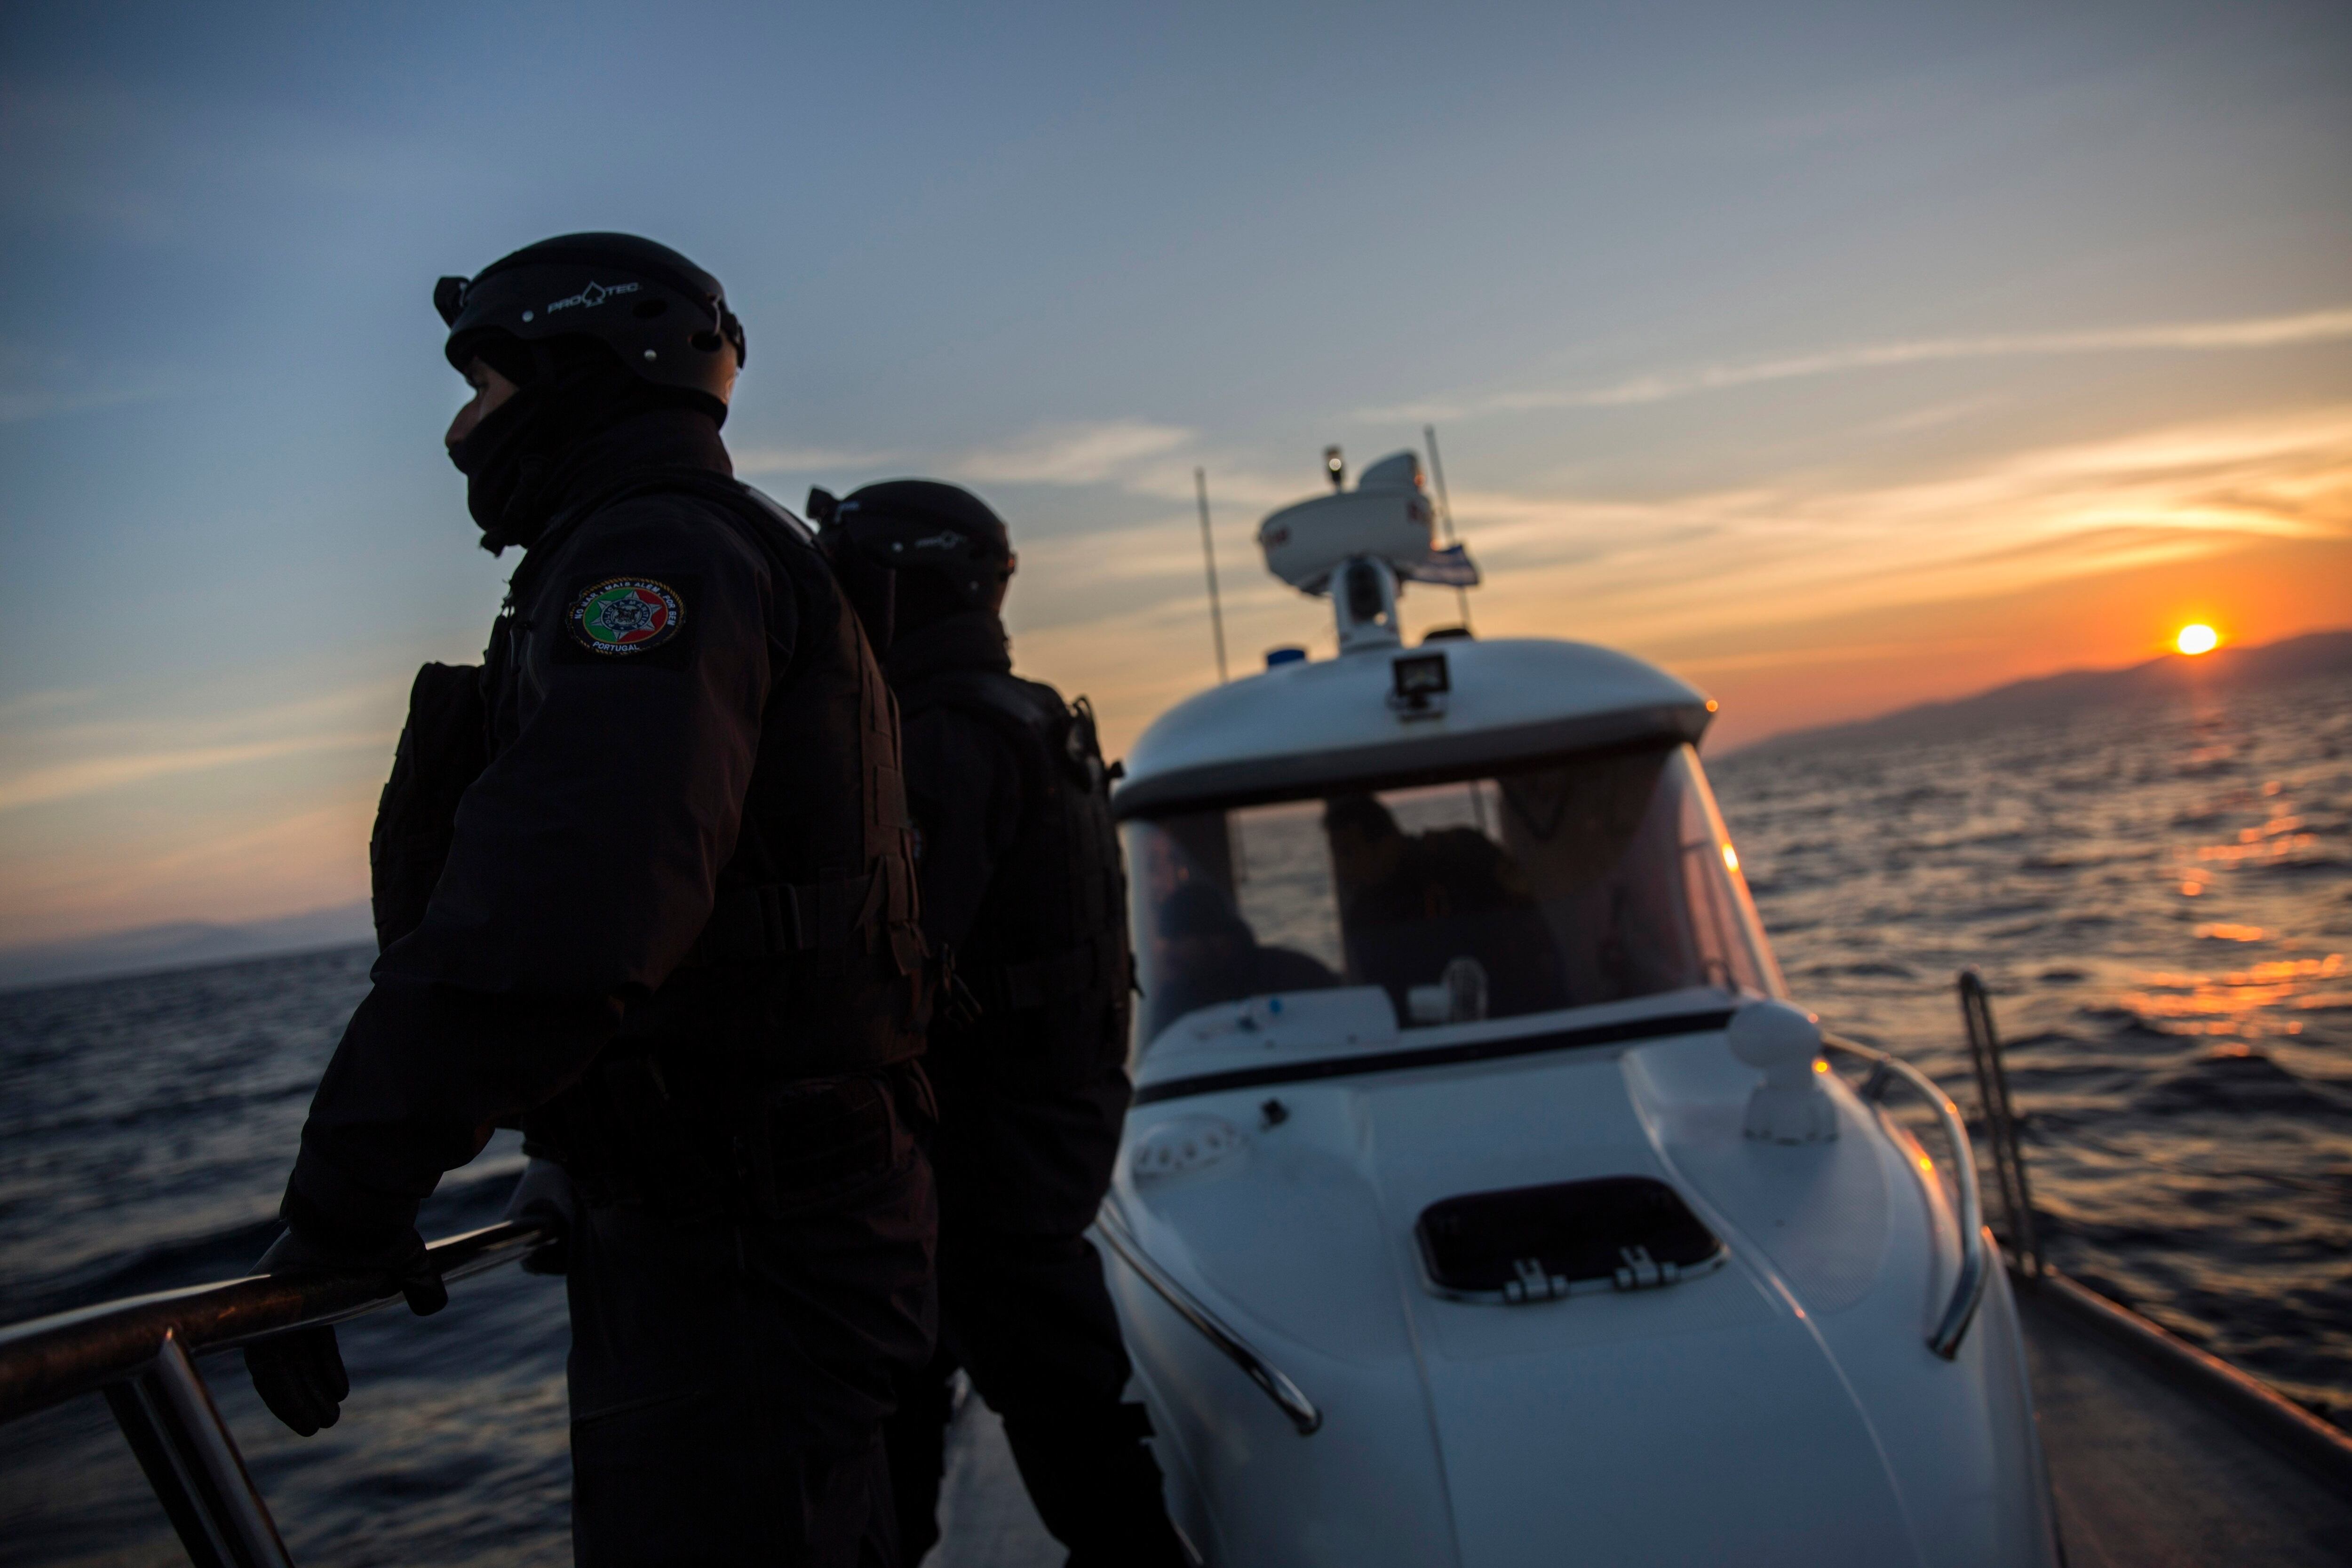 ARCHIVO - Integrantes de Frontex, la Agencia Europea de la Guardia de Fronteras y Costas, realiza patrullaje cerca de la isla griega de Lesbos, nke 8 de diciembre de 2015. (AP Foto/Santi Palacios, archivo)